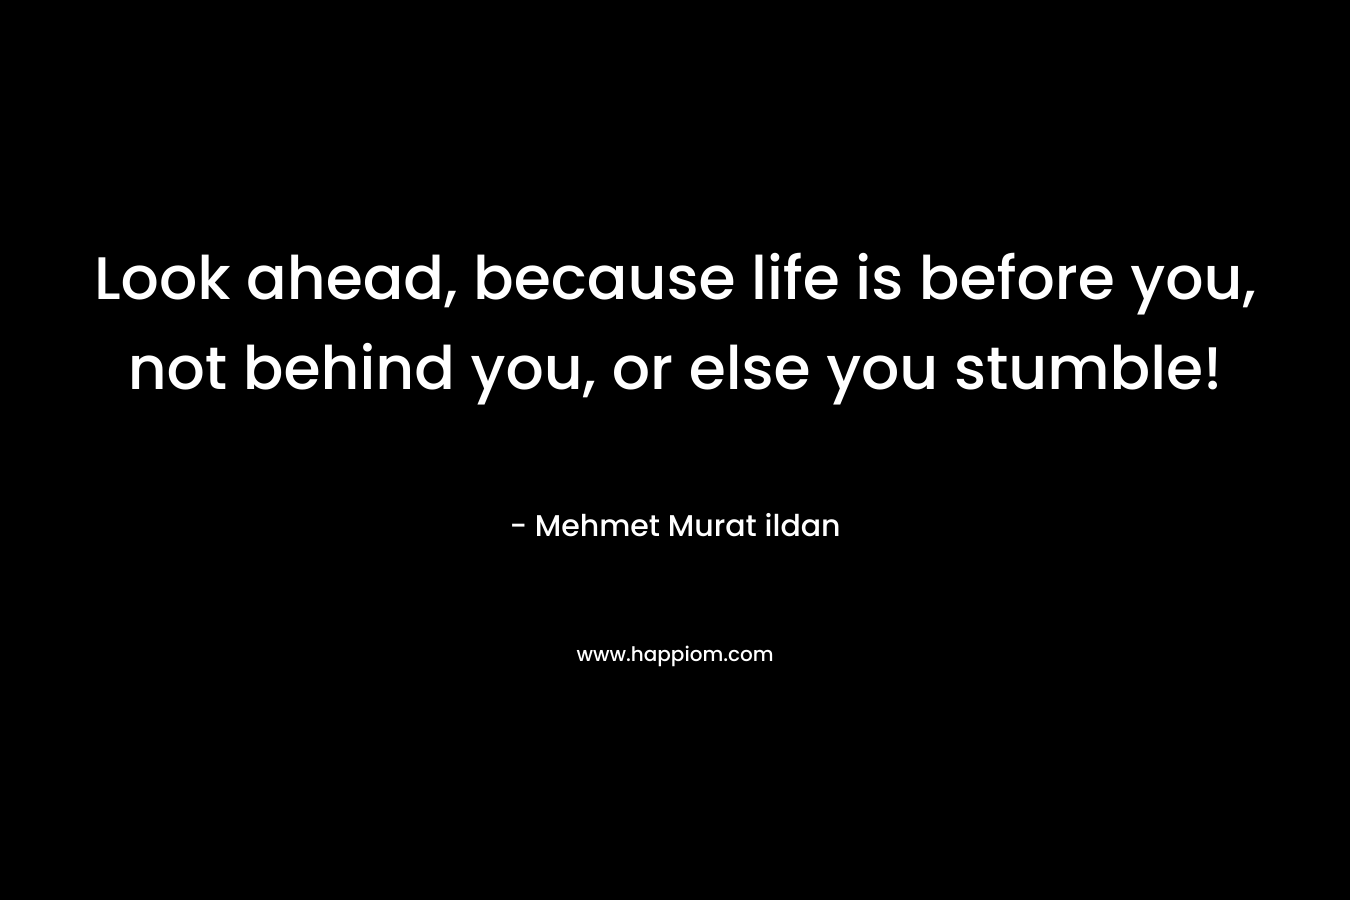 Look ahead, because life is before you, not behind you, or else you stumble! – Mehmet Murat ildan